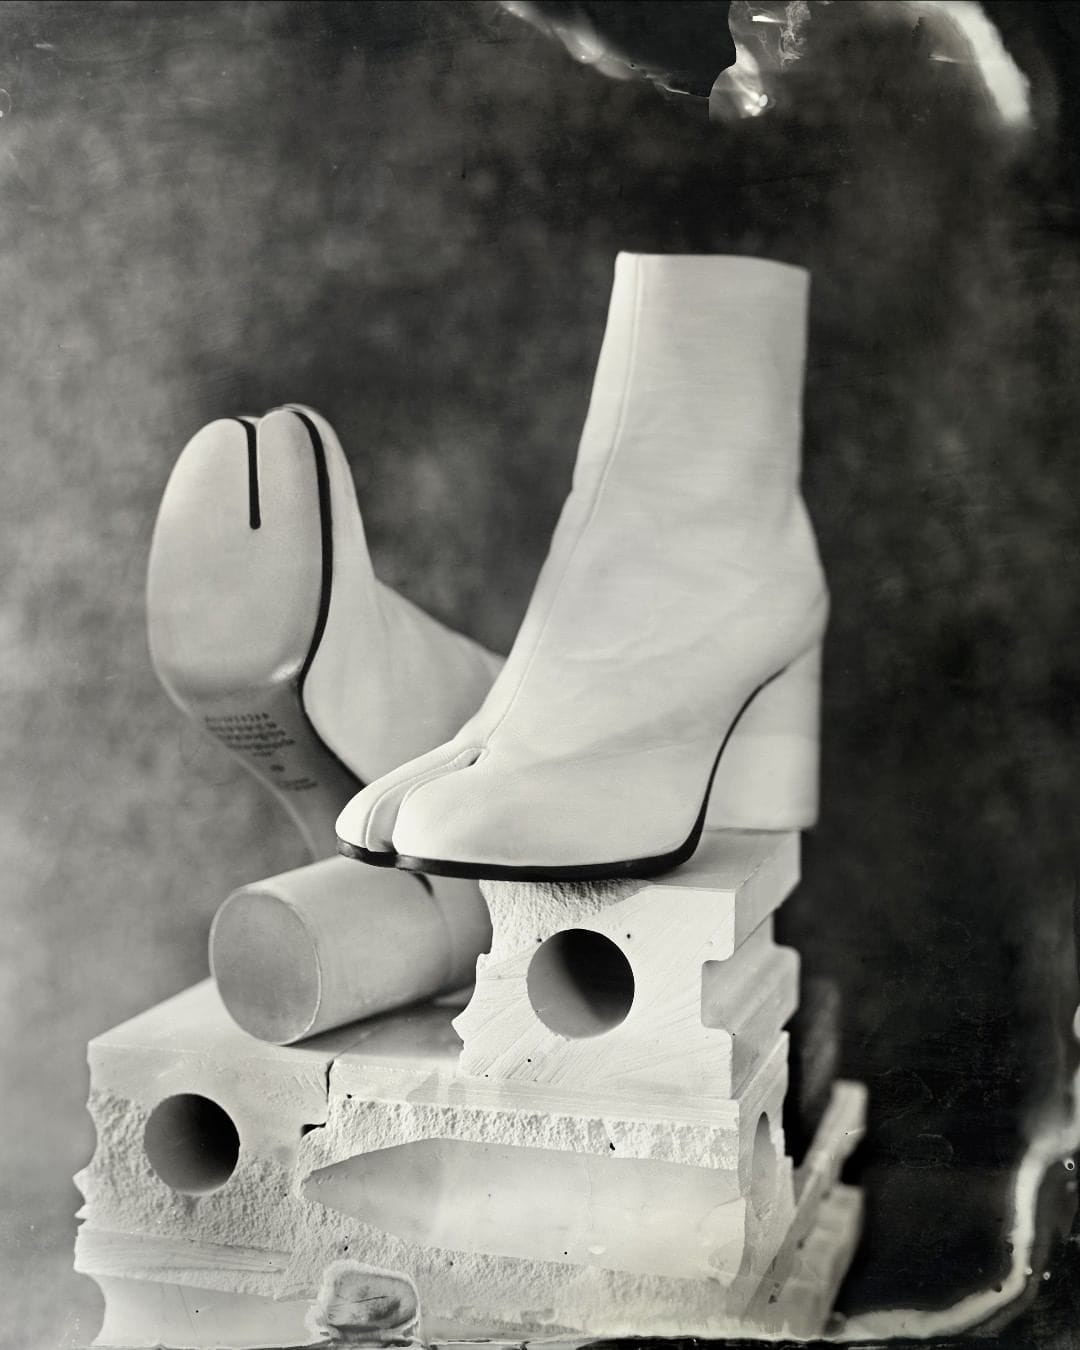 Bottines Tabi par Maison Margiela : bottine blanche à semelle noire, talon rond. À l'avant, au niveau des orteils, la chaussure est divisée en deux, presque comme une paire de tongues. 